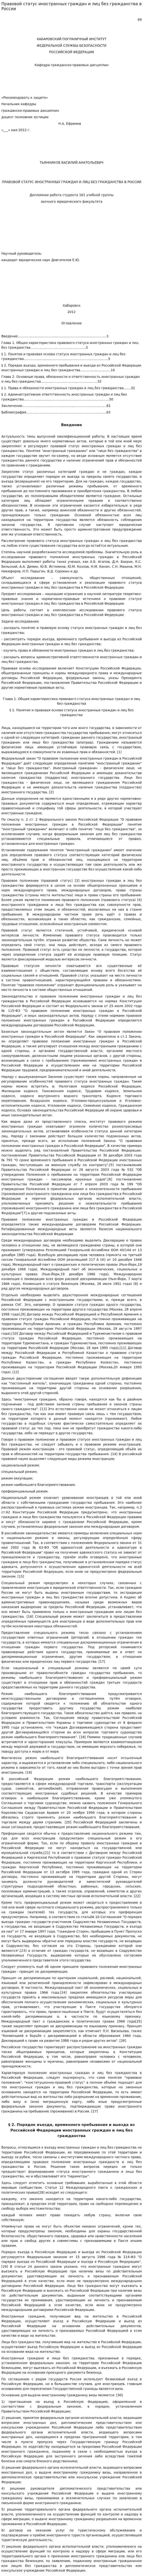 Правовой статус иностранных граждан и лиц без гражданства в России